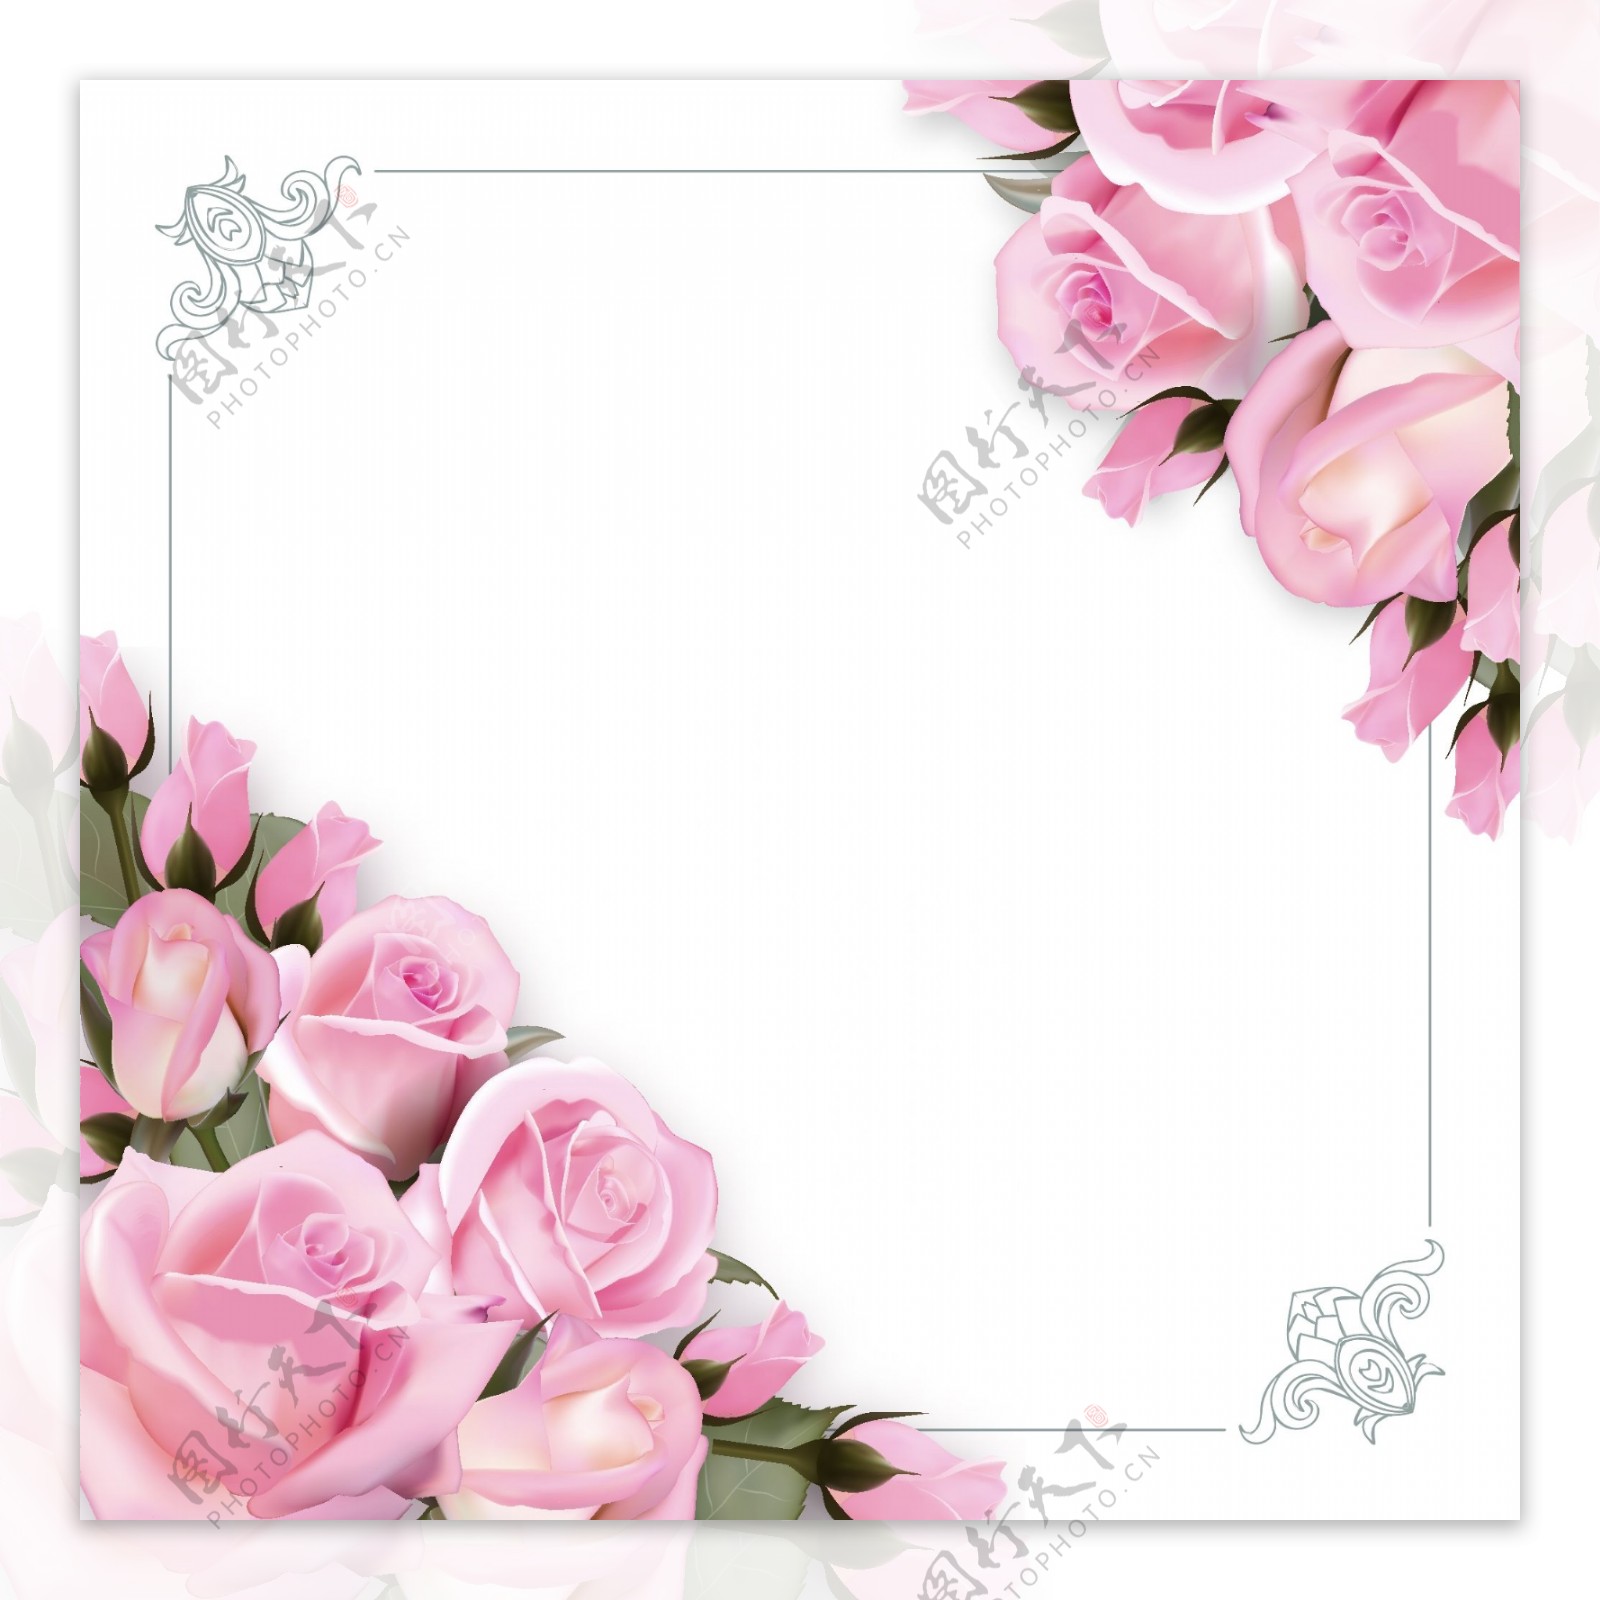 唯美欧式粉红色玫瑰花朵边框花边